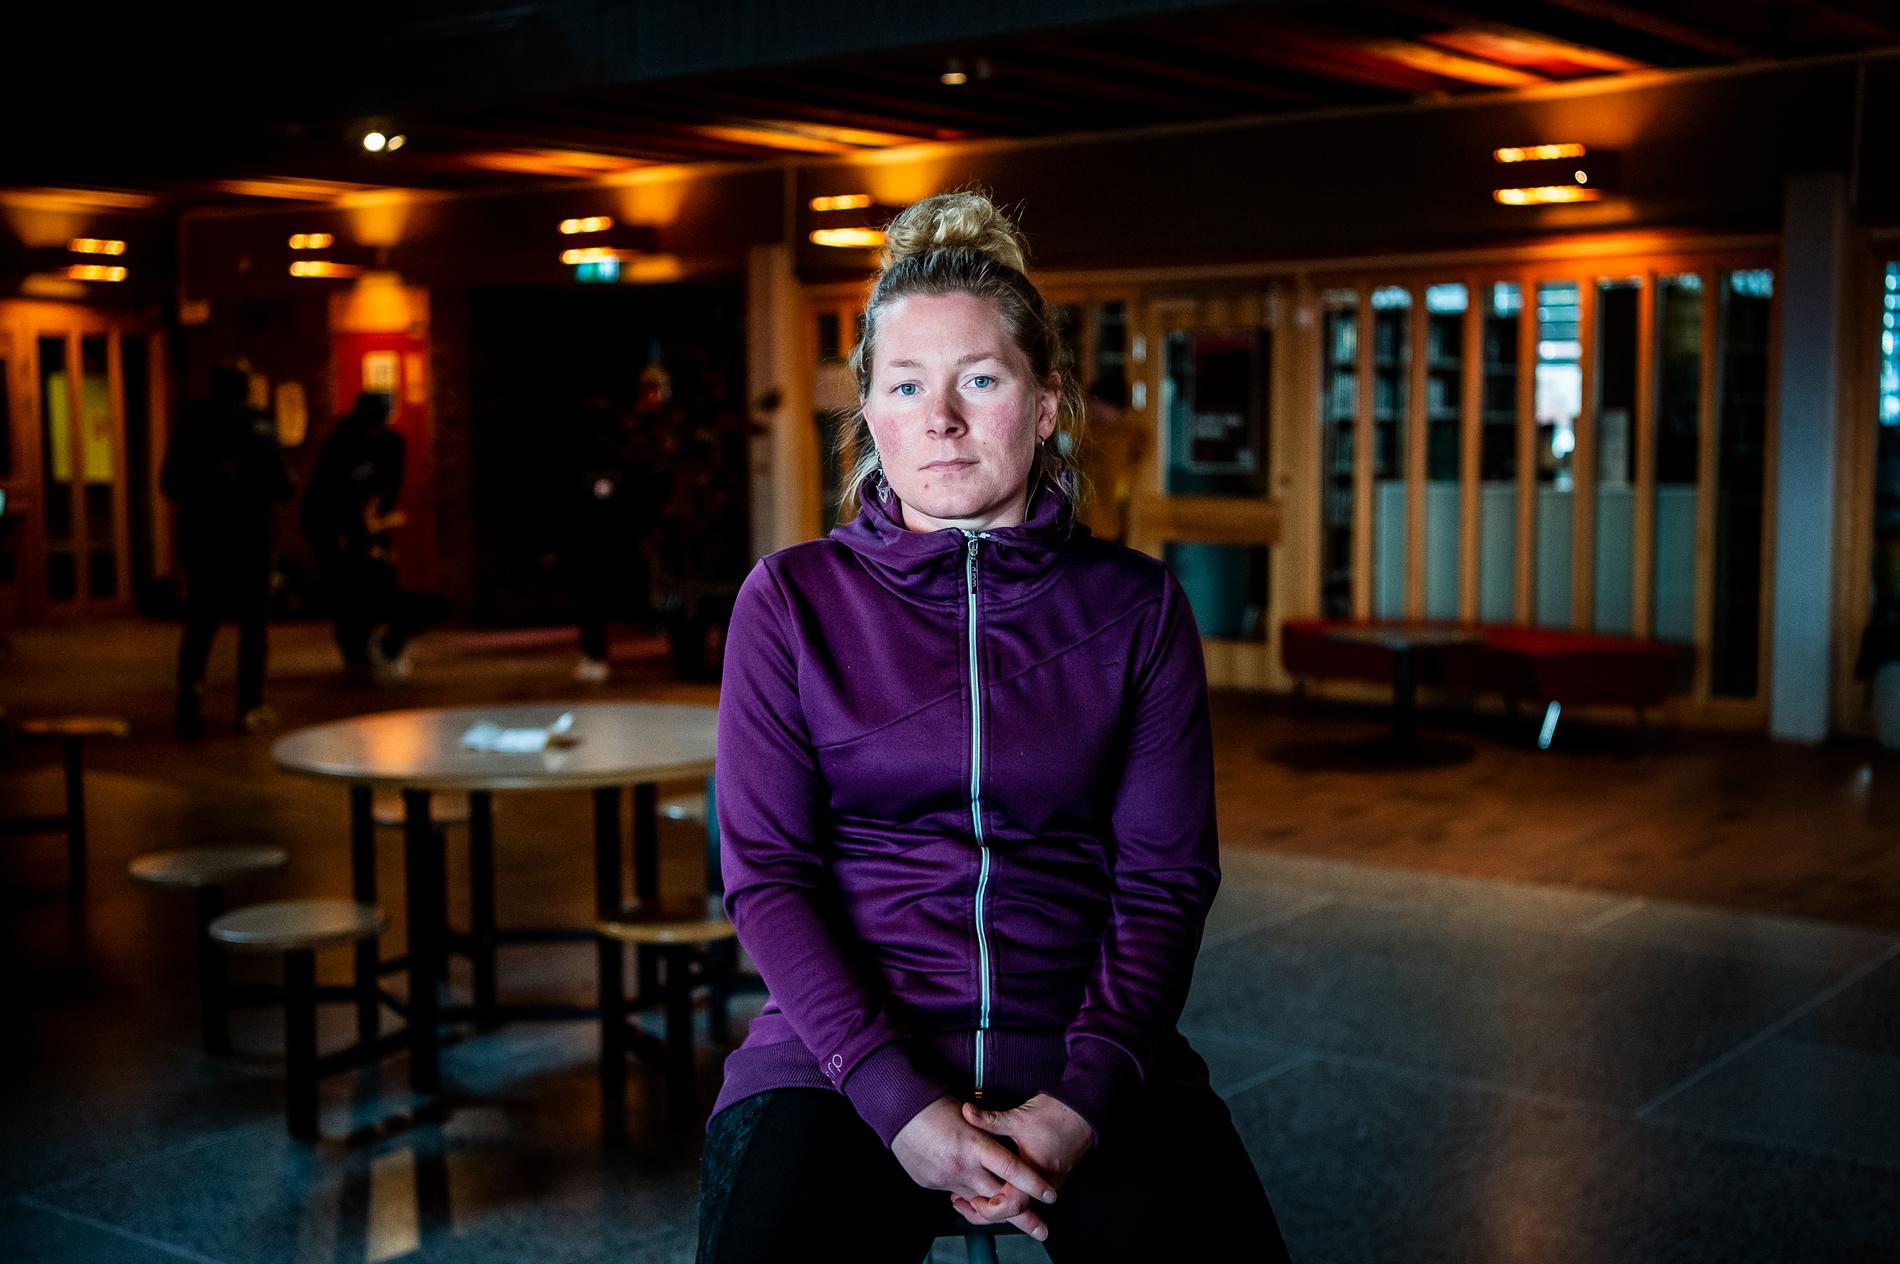 ”Om flexenheten försvinner måste lärarna trolla med knäna i klassrummet”, säger Christine Brännvall, kurator på Högalidskolan i Kiruna.